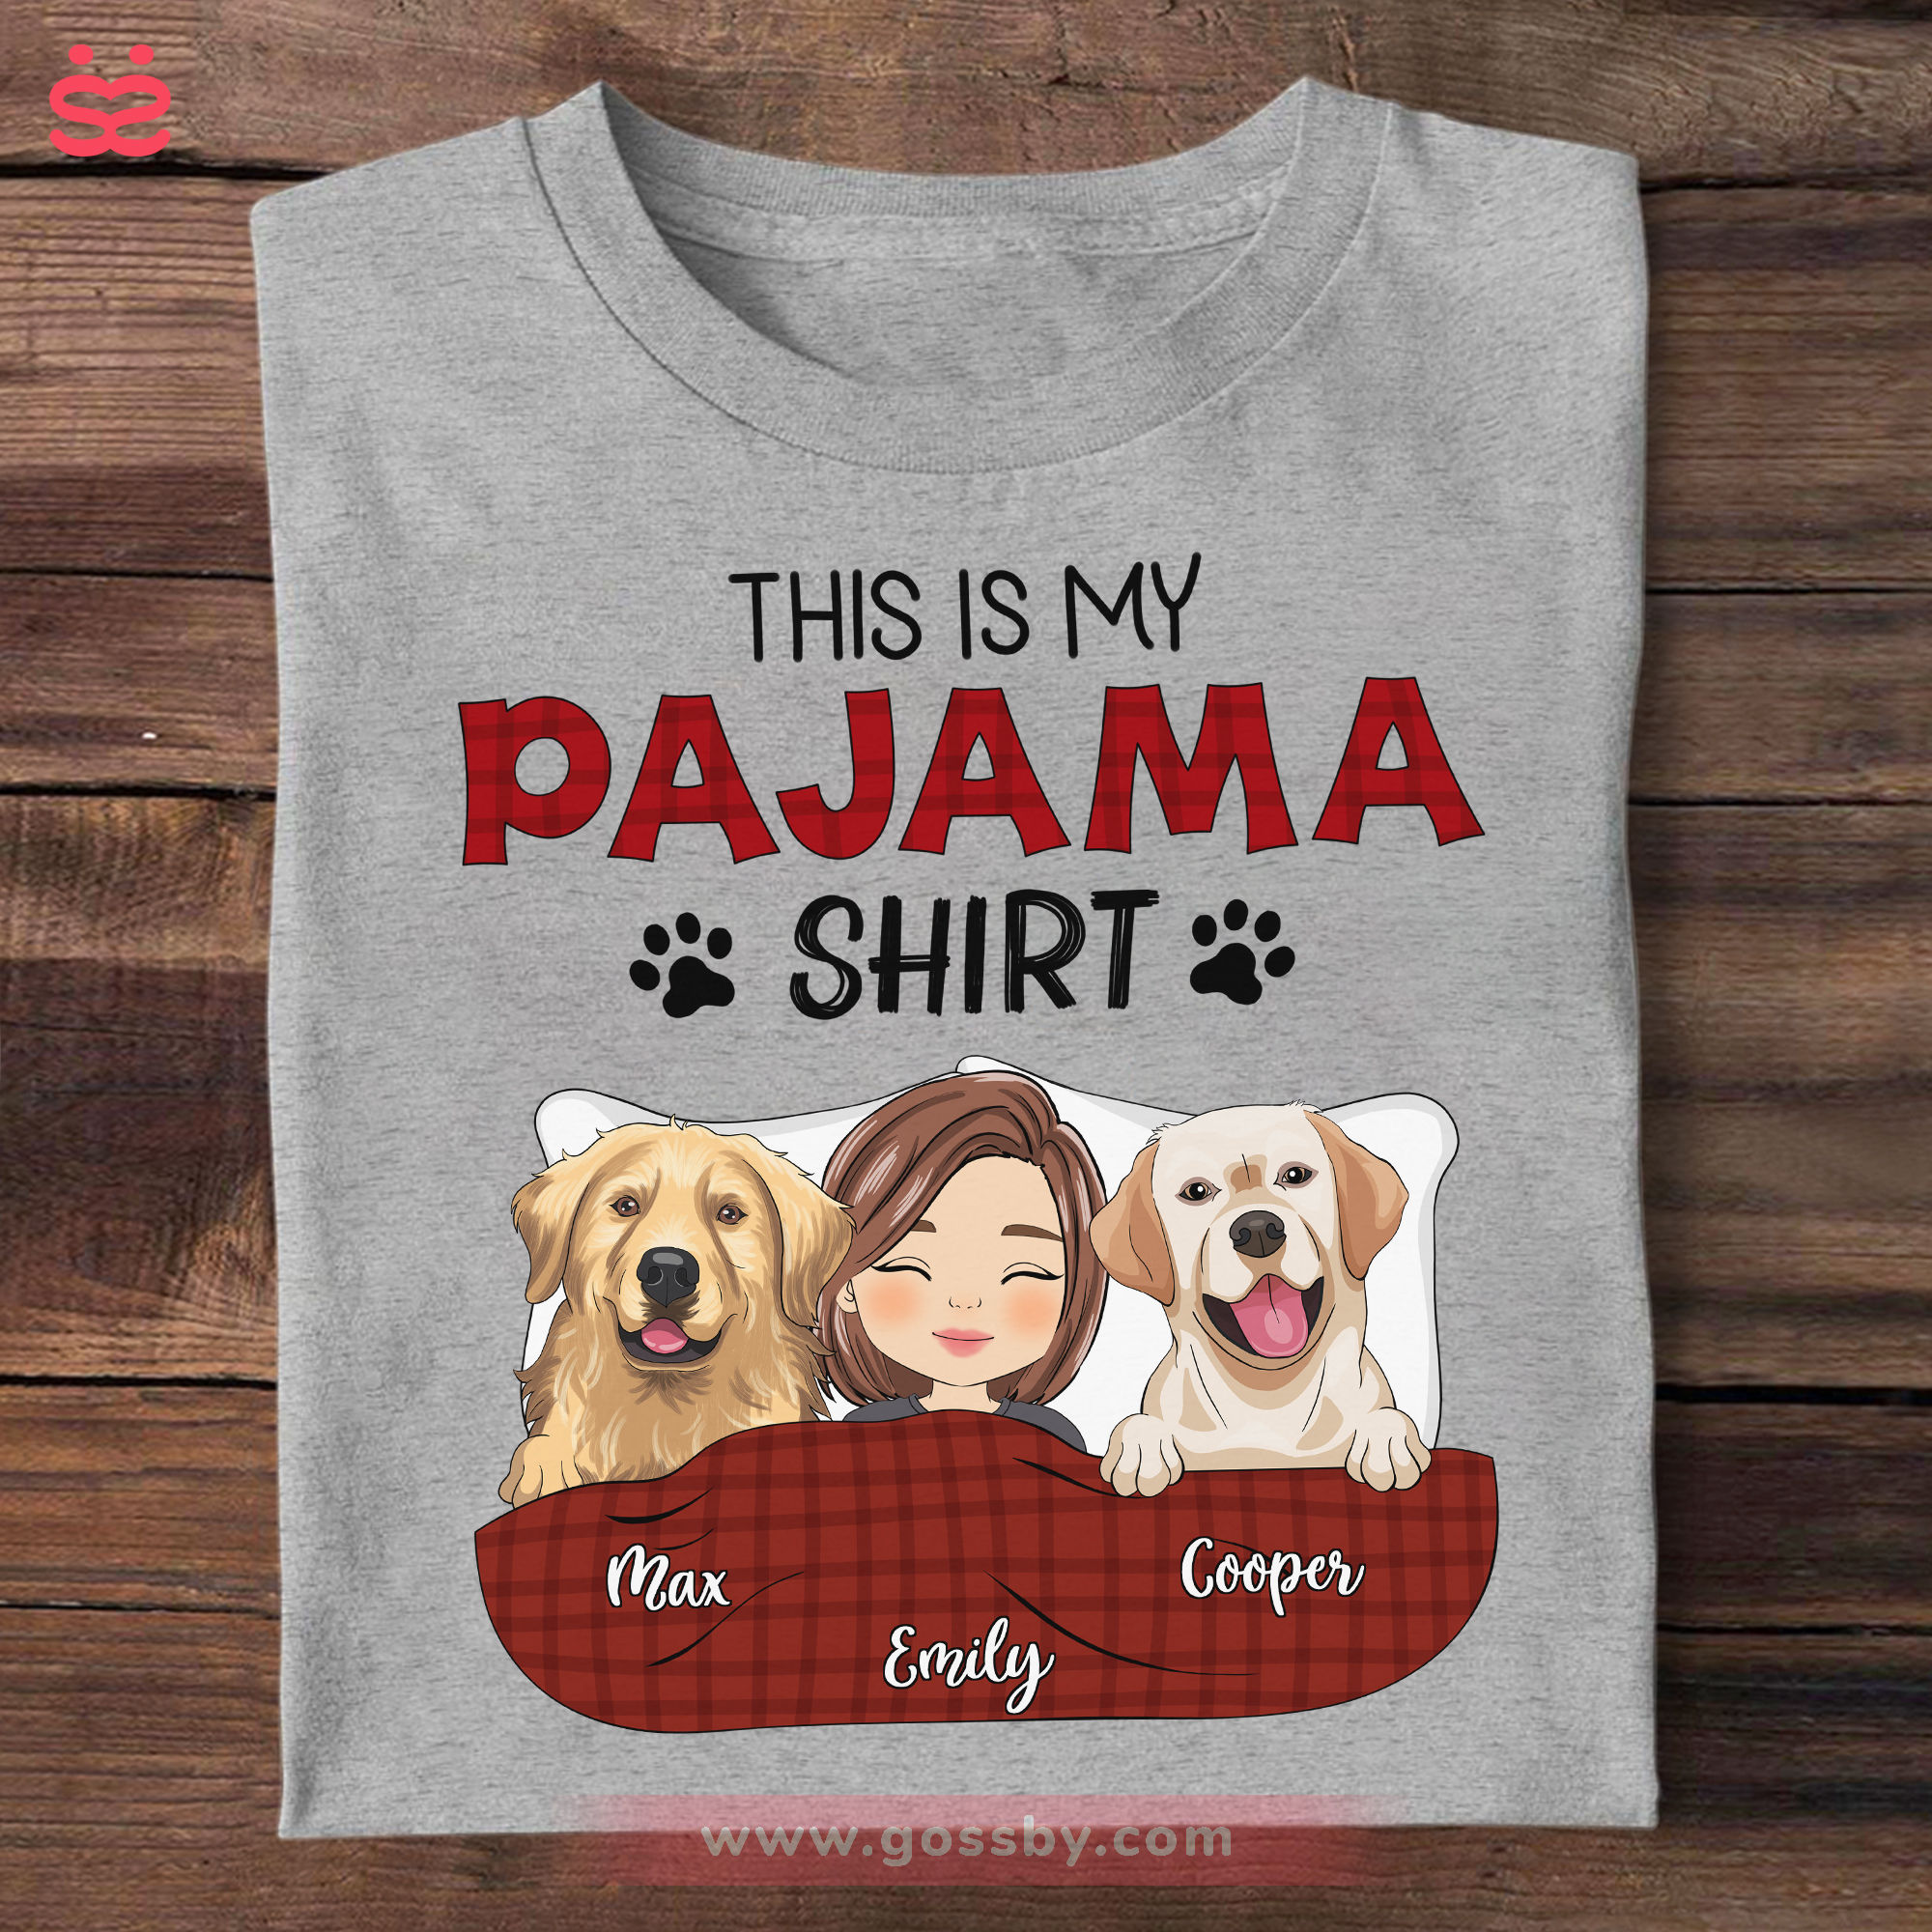 PawsomeLV dog shirt • Yorkies Gram